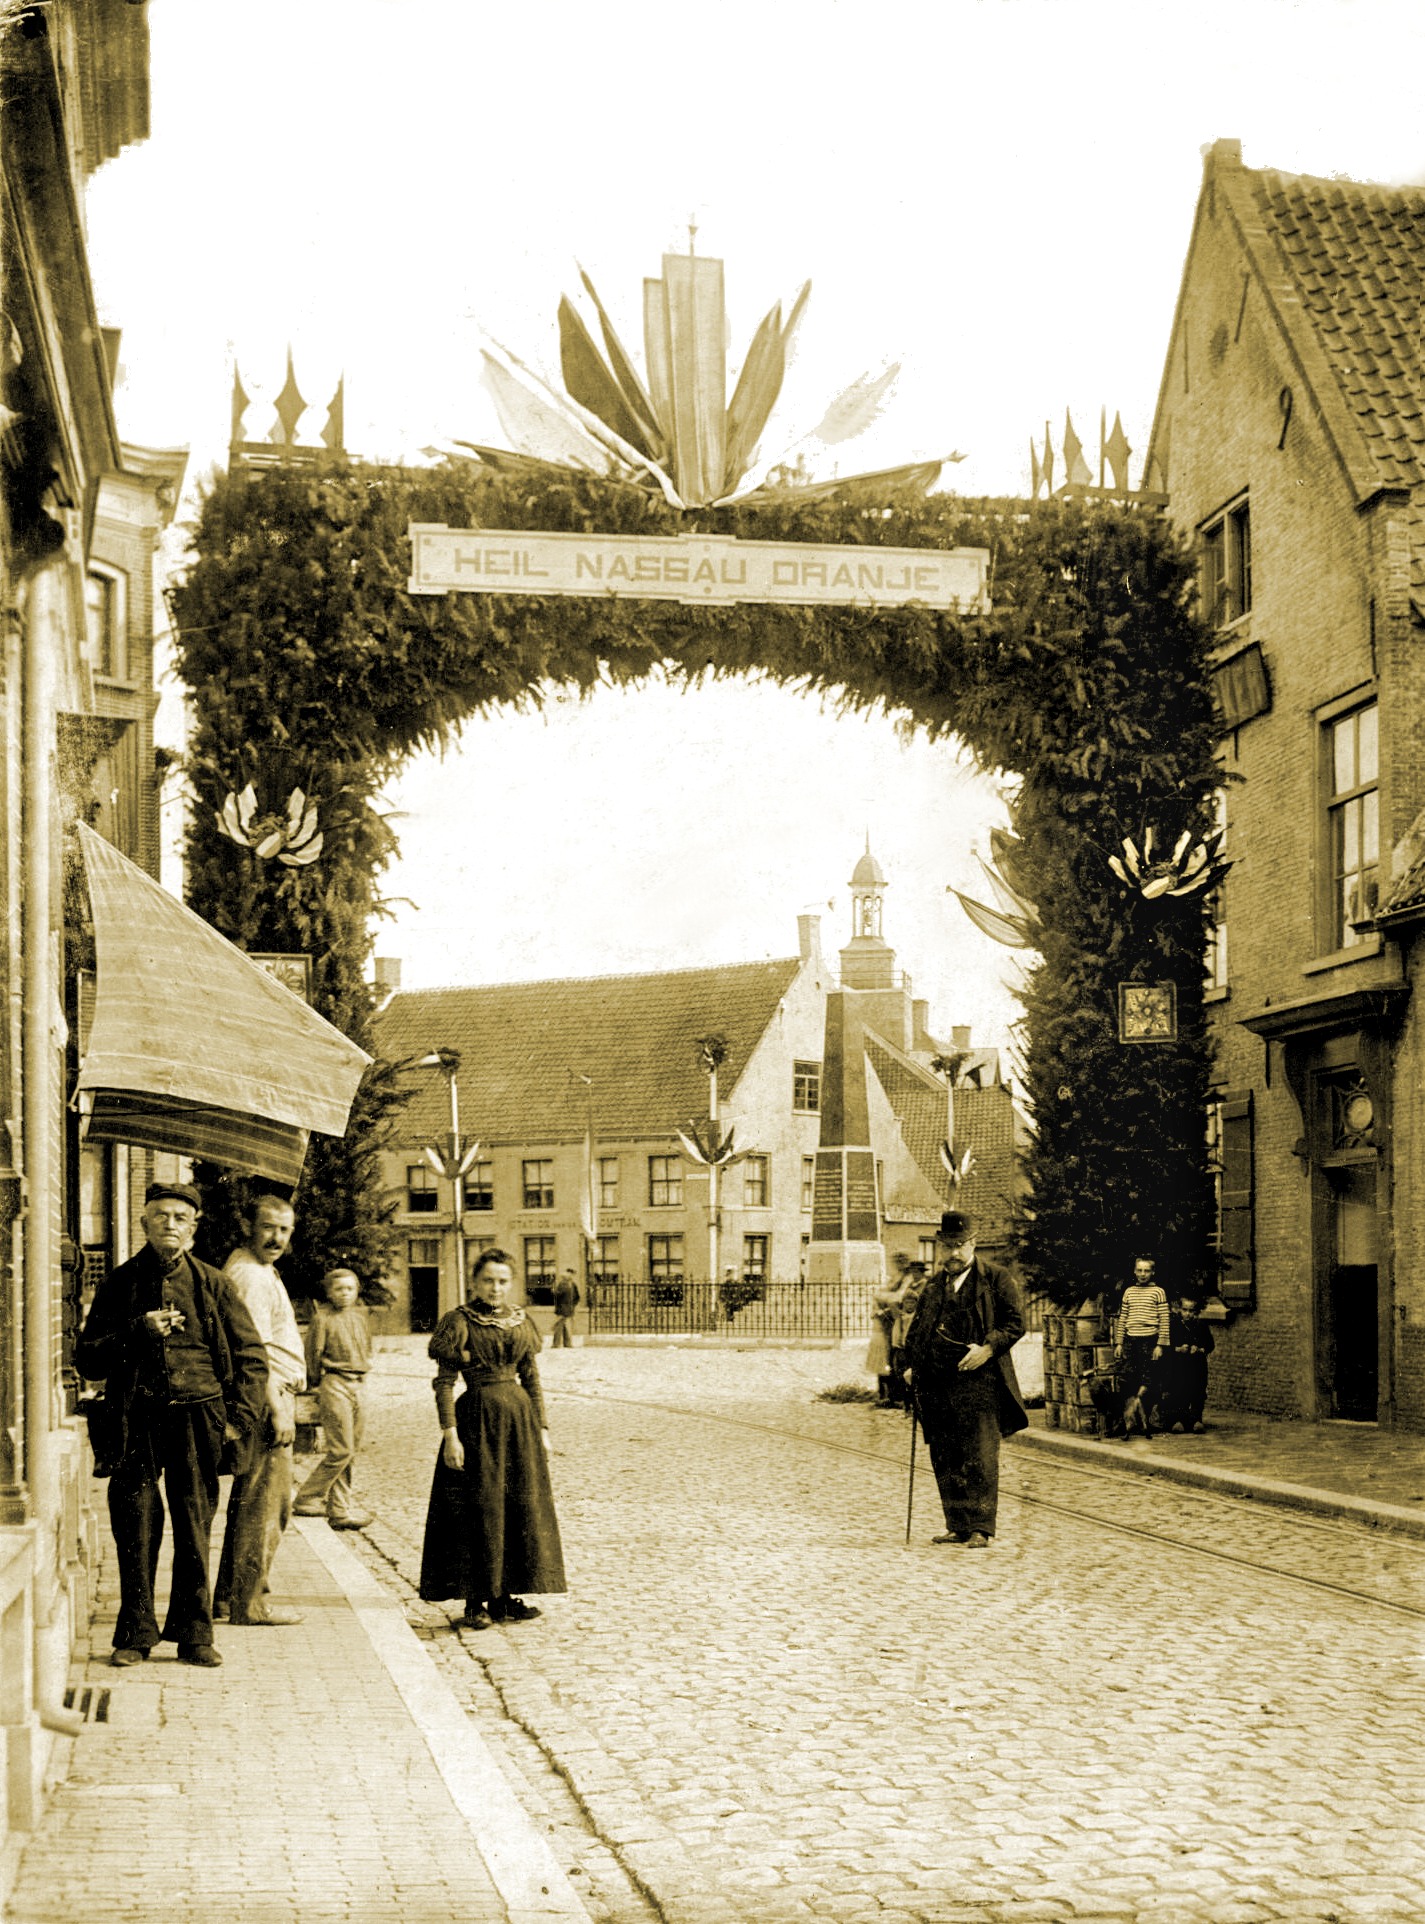 De Haagsemarkt gezien vanuit de Grootestraat, later Liesbos(ch)straat in het jaar 1898 rond 31 augustus, de dag van de troonsbestijging van koningin Wilhelmina die toen 18 jaar werd. Het was daarom ook in Princenhage feest met de in die tijd gebruikelijke feestbogen. Foto: met dank aan de familie Jacobs.